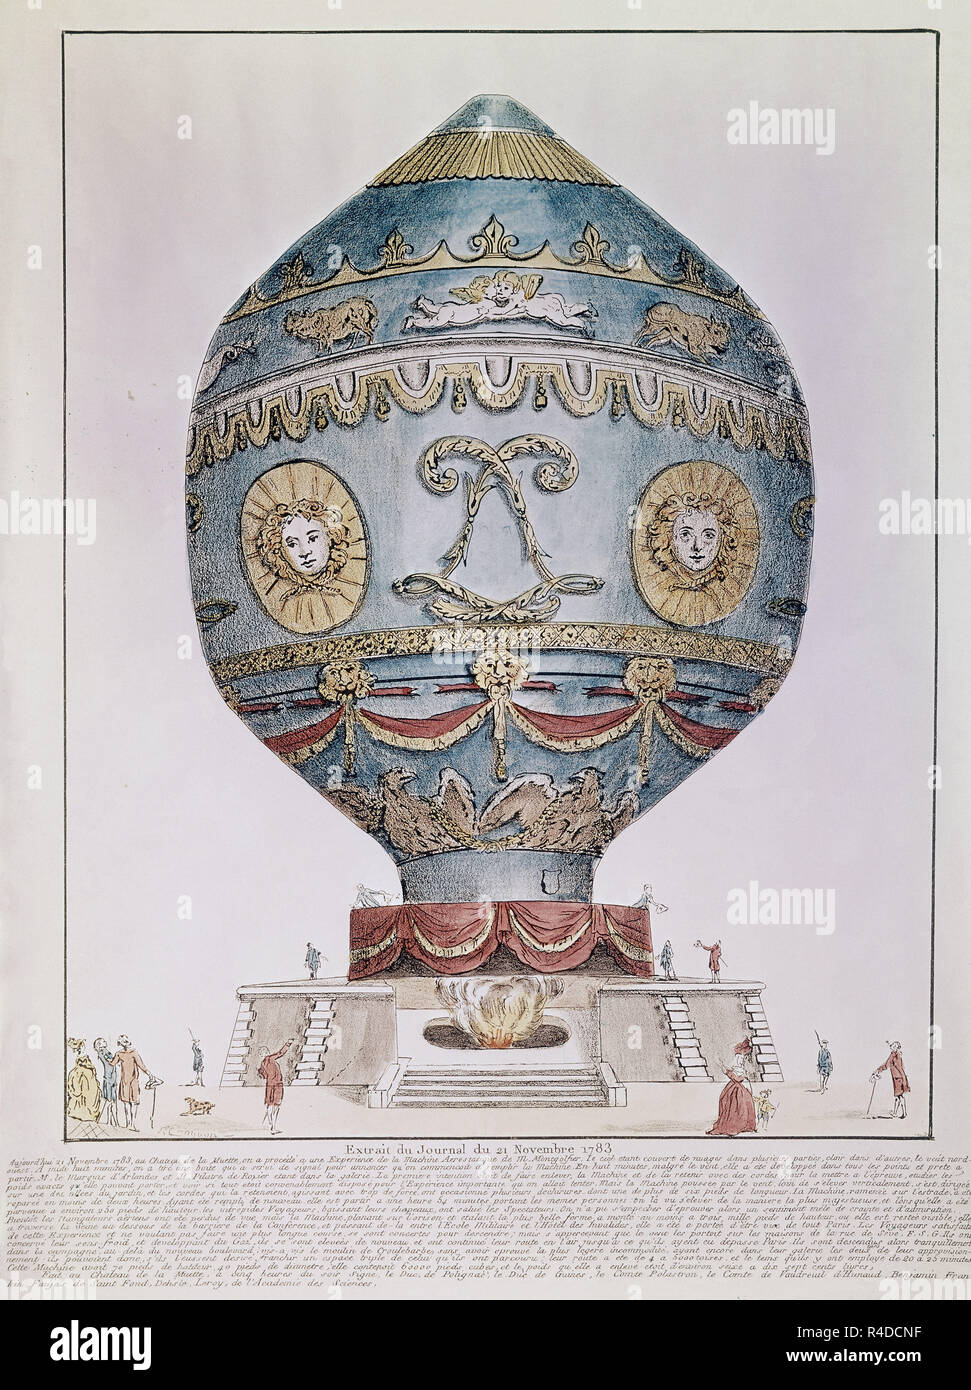 Aerostatische Ballon, erfunden von Brüder Montgolfier. 70 Meter hoch, 40 Meter Durchmesser. JOURNAL 11/21/1783. Autor: JOSE Y ETIENNE MONTGOLFIER. Standort: Private Collection. MADRID. Spanien. Stockfoto